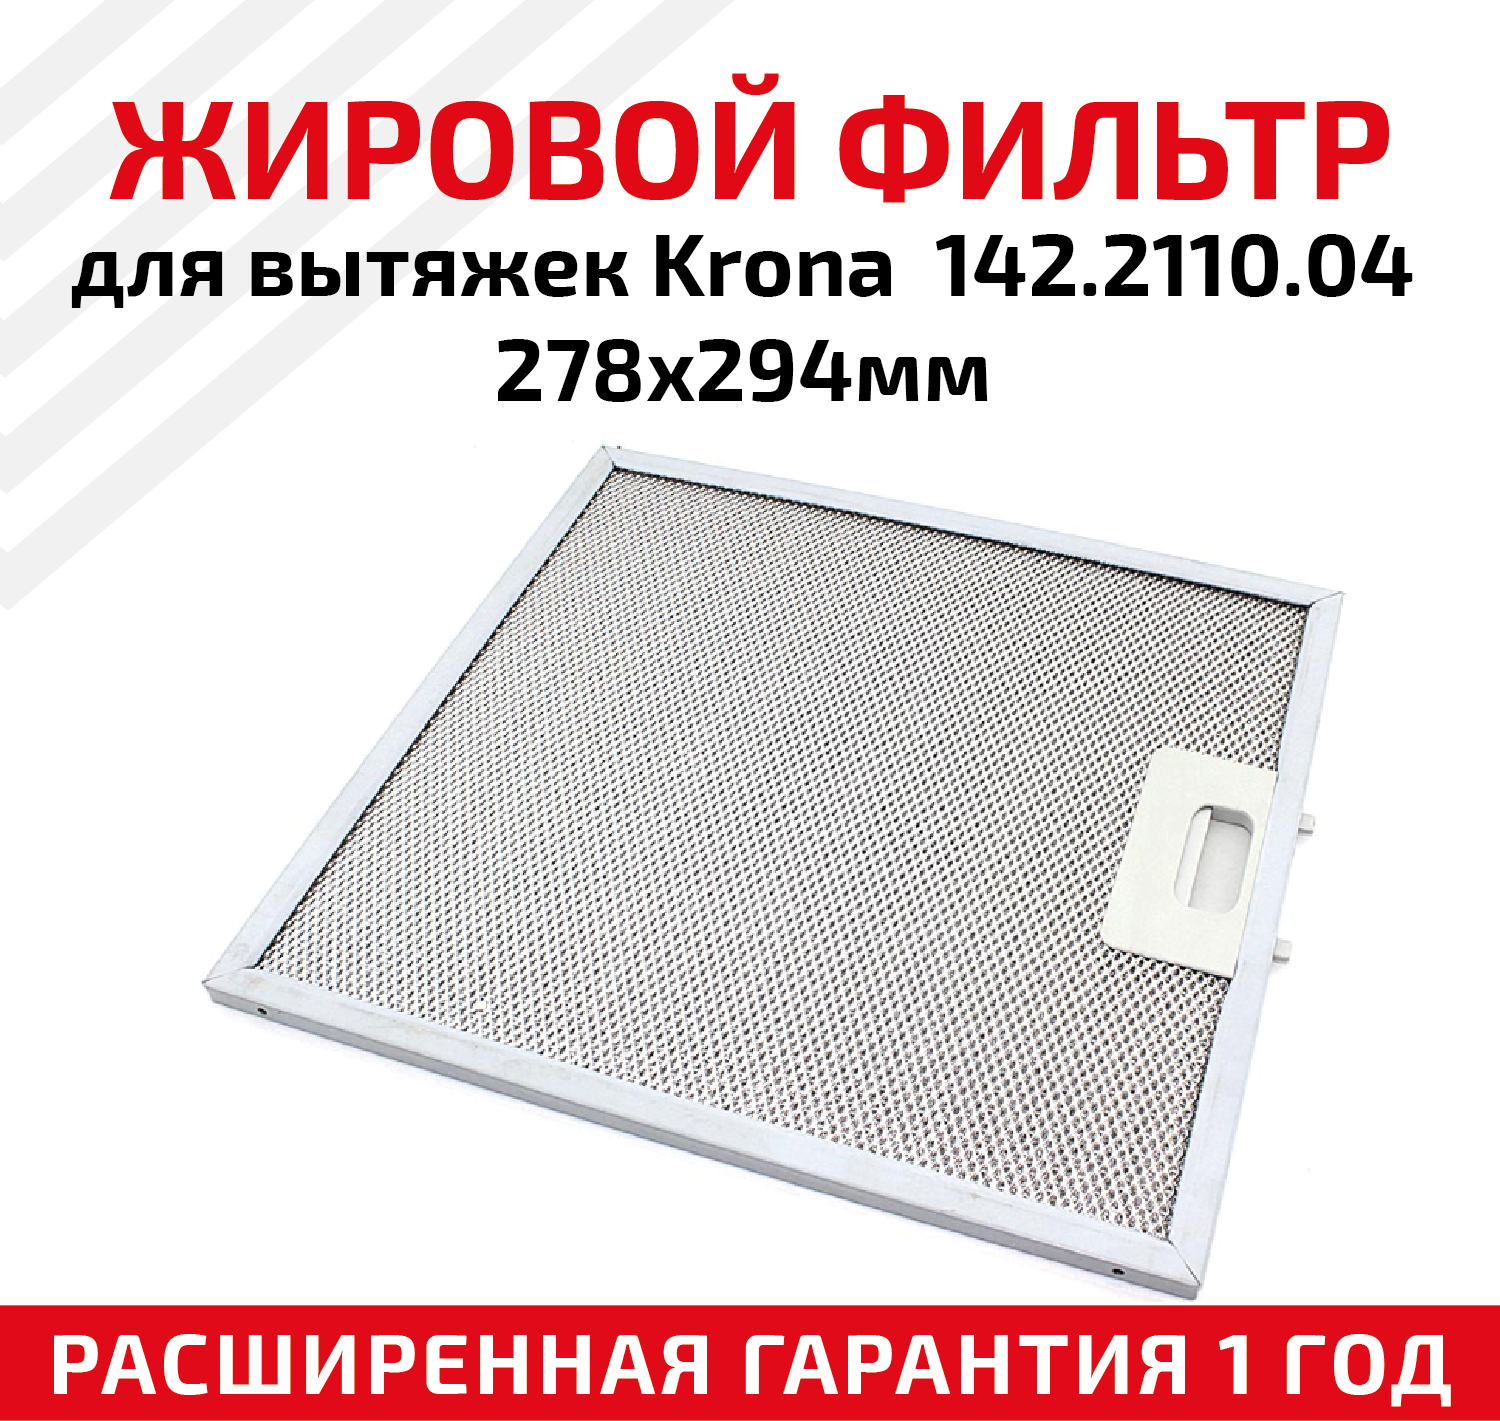 Жировой фильтр (кассета) алюминиевый (металлический) рамочный для вытяжек Krona 142.2110.04, многоразовый, 278х294мм